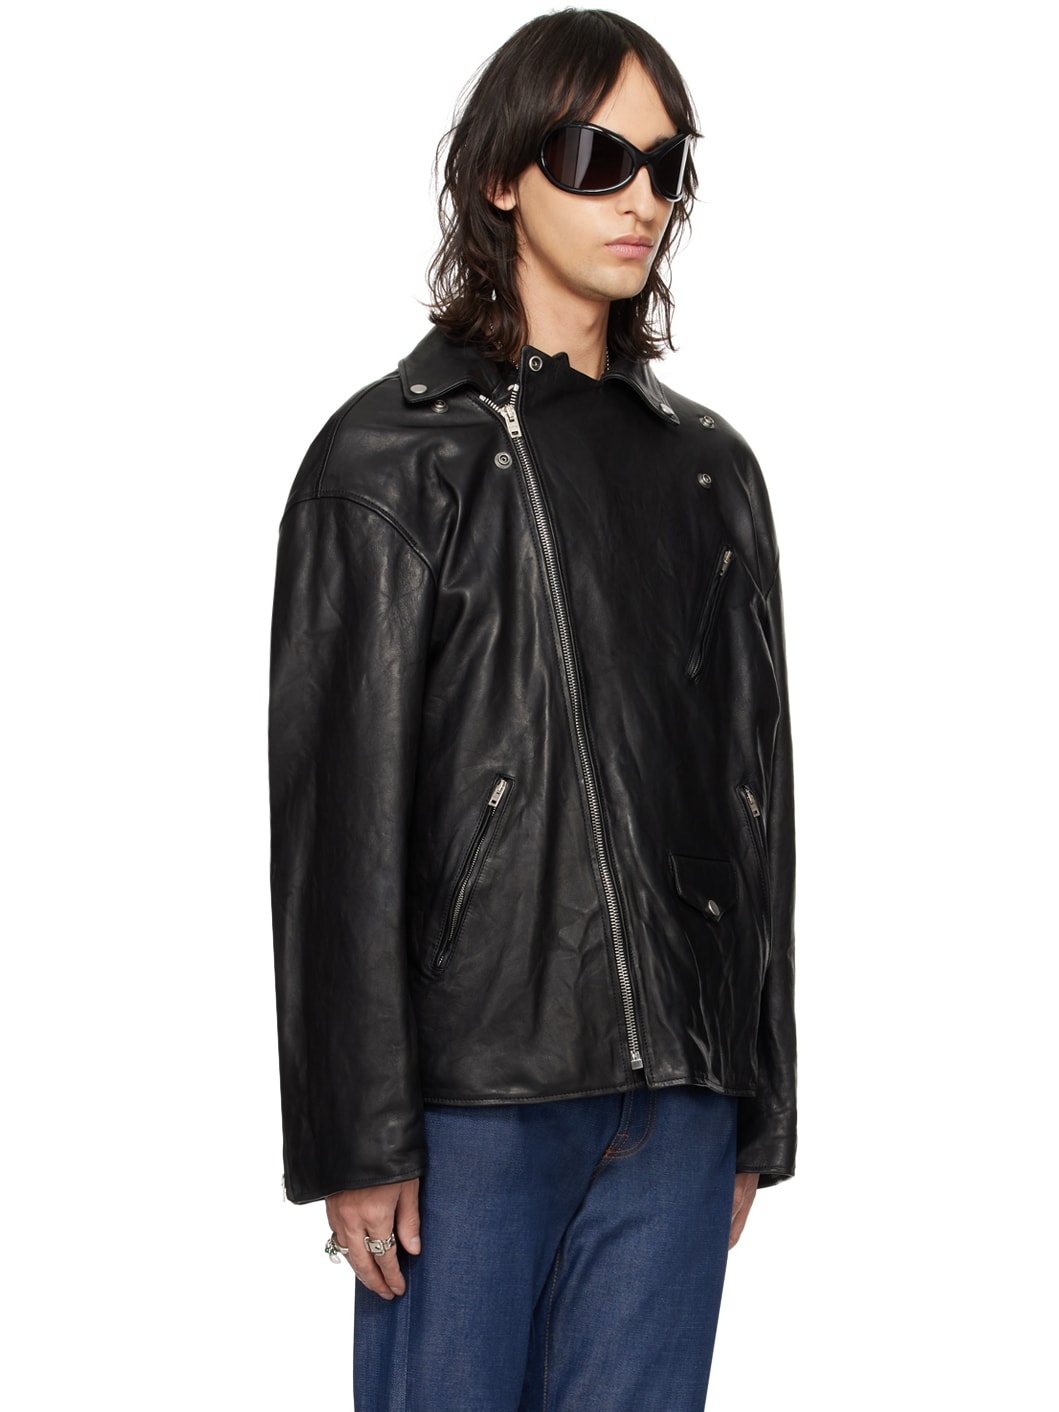 Black Distressed Leather Jacket - 4